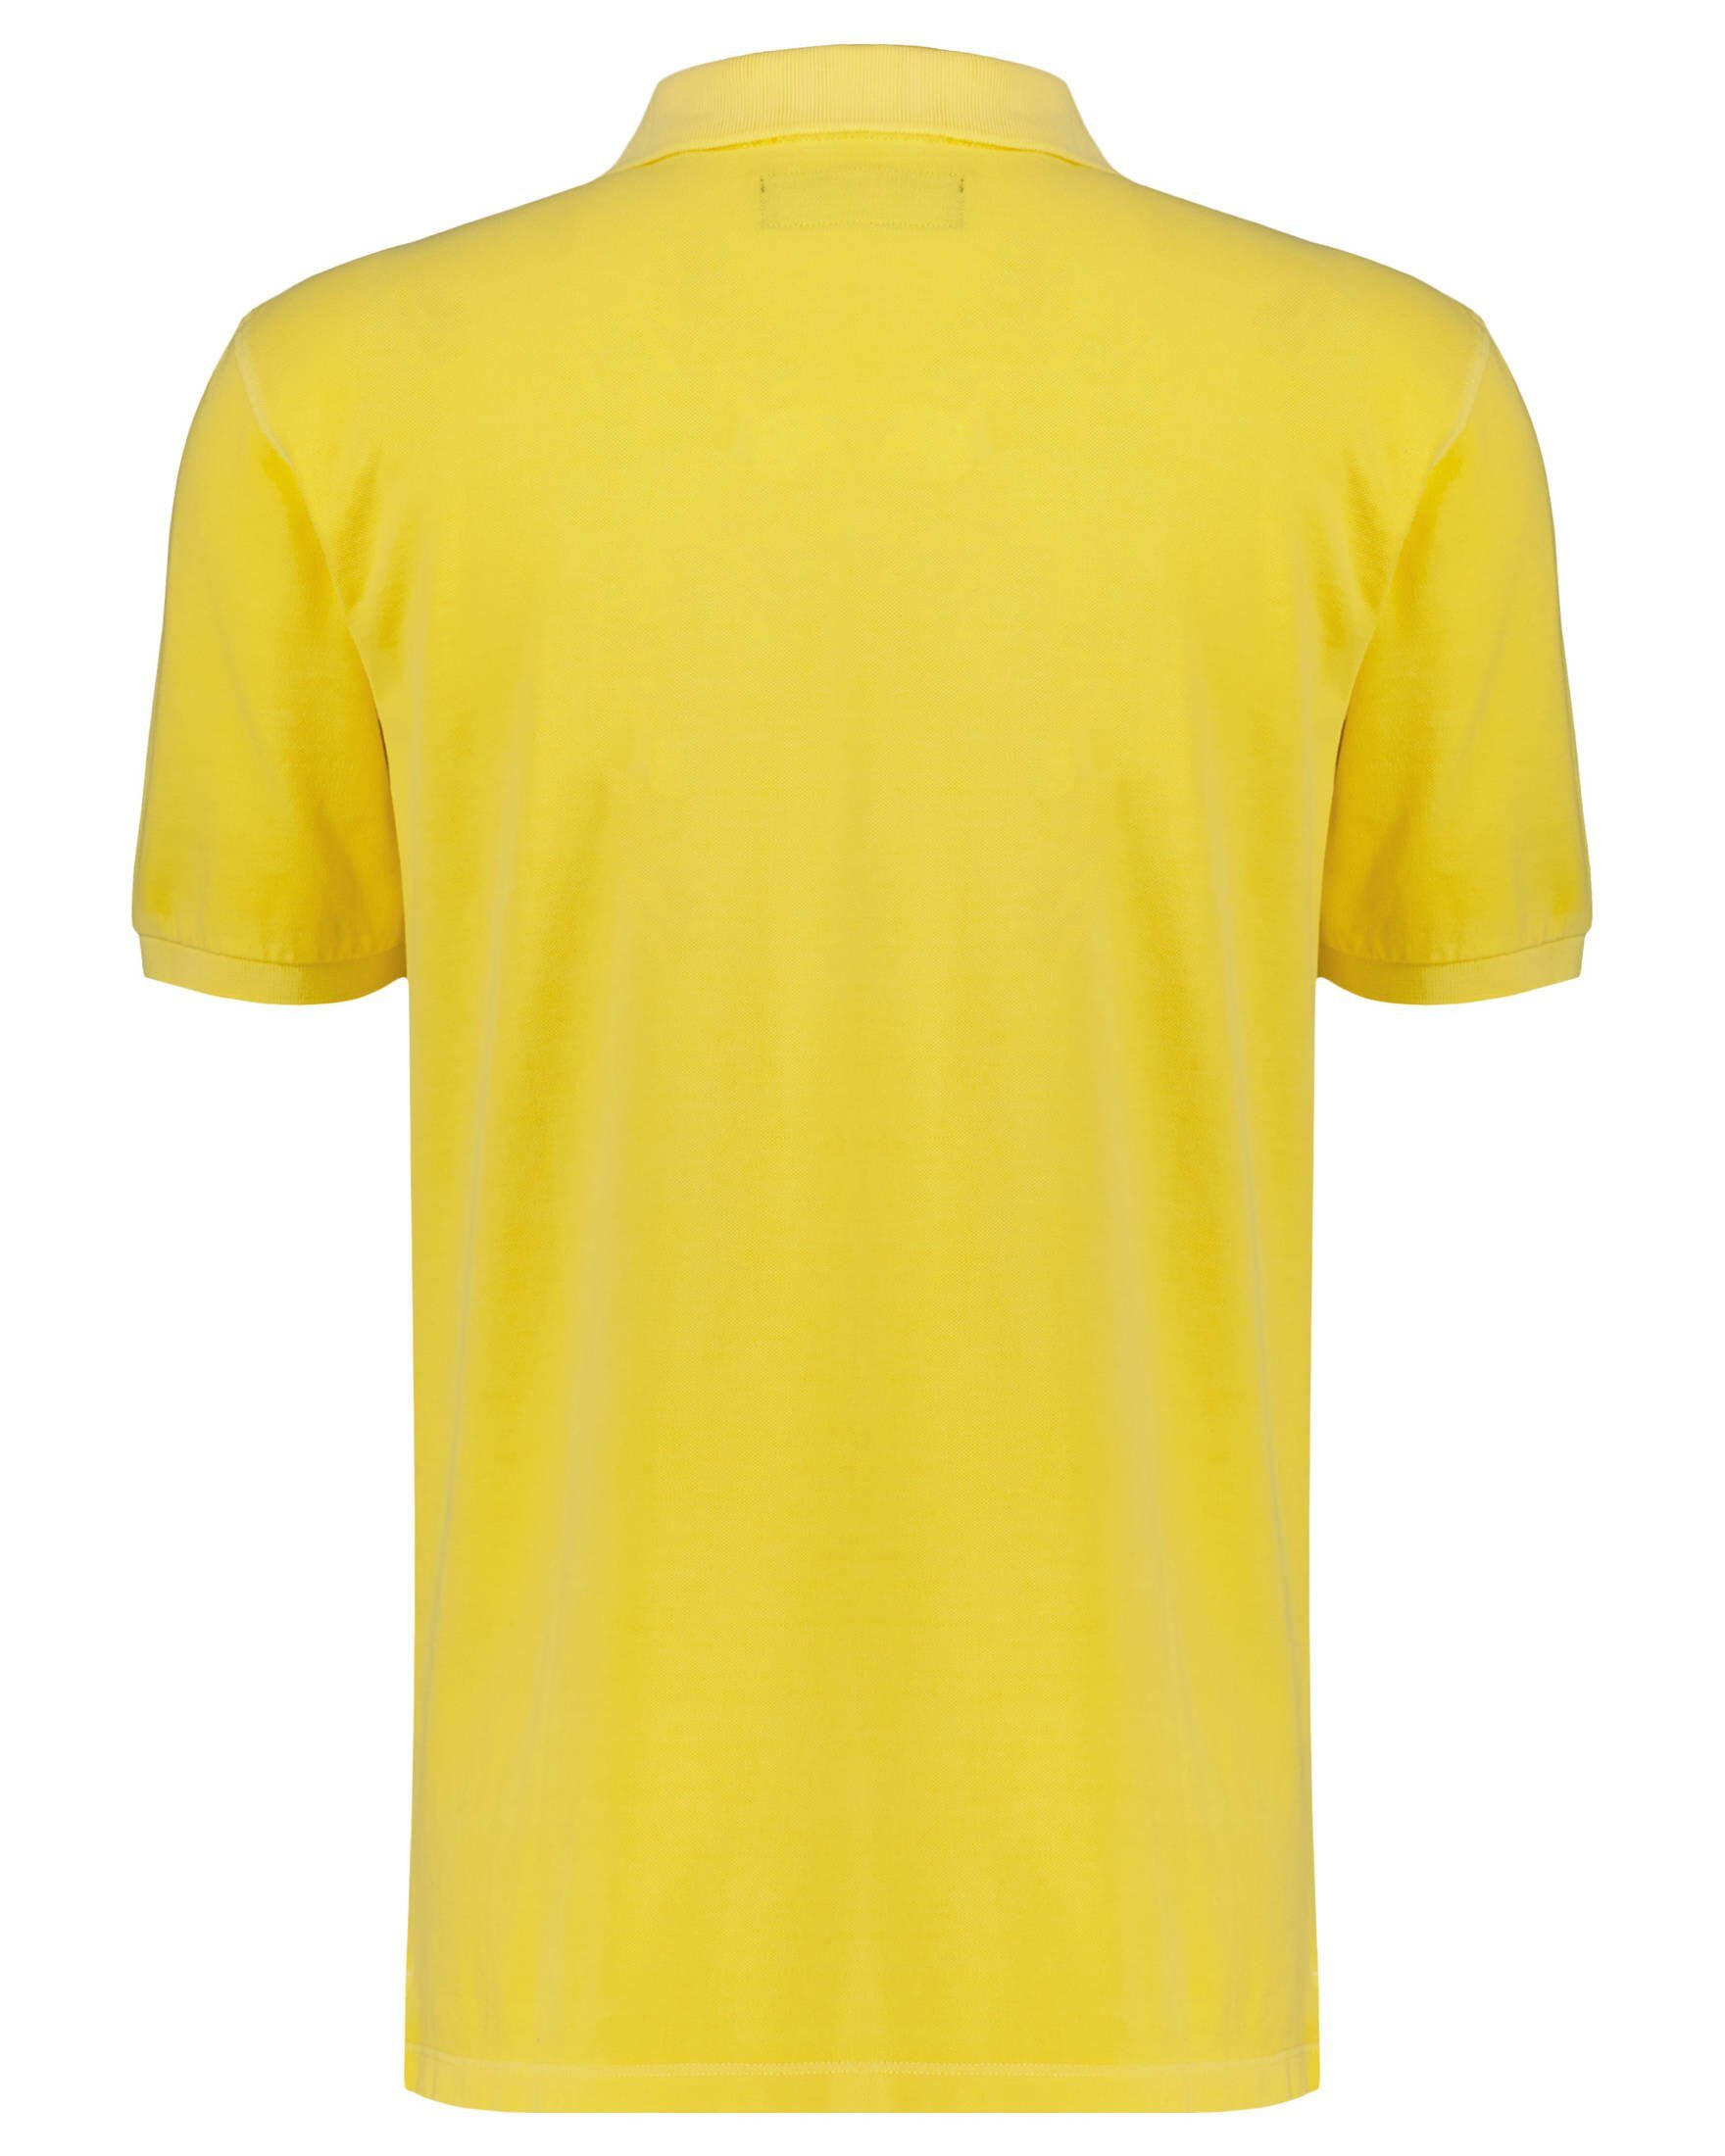 O'Polo Marc (1-tlg) gelb Herren Poloshirt (31) Poloshirt